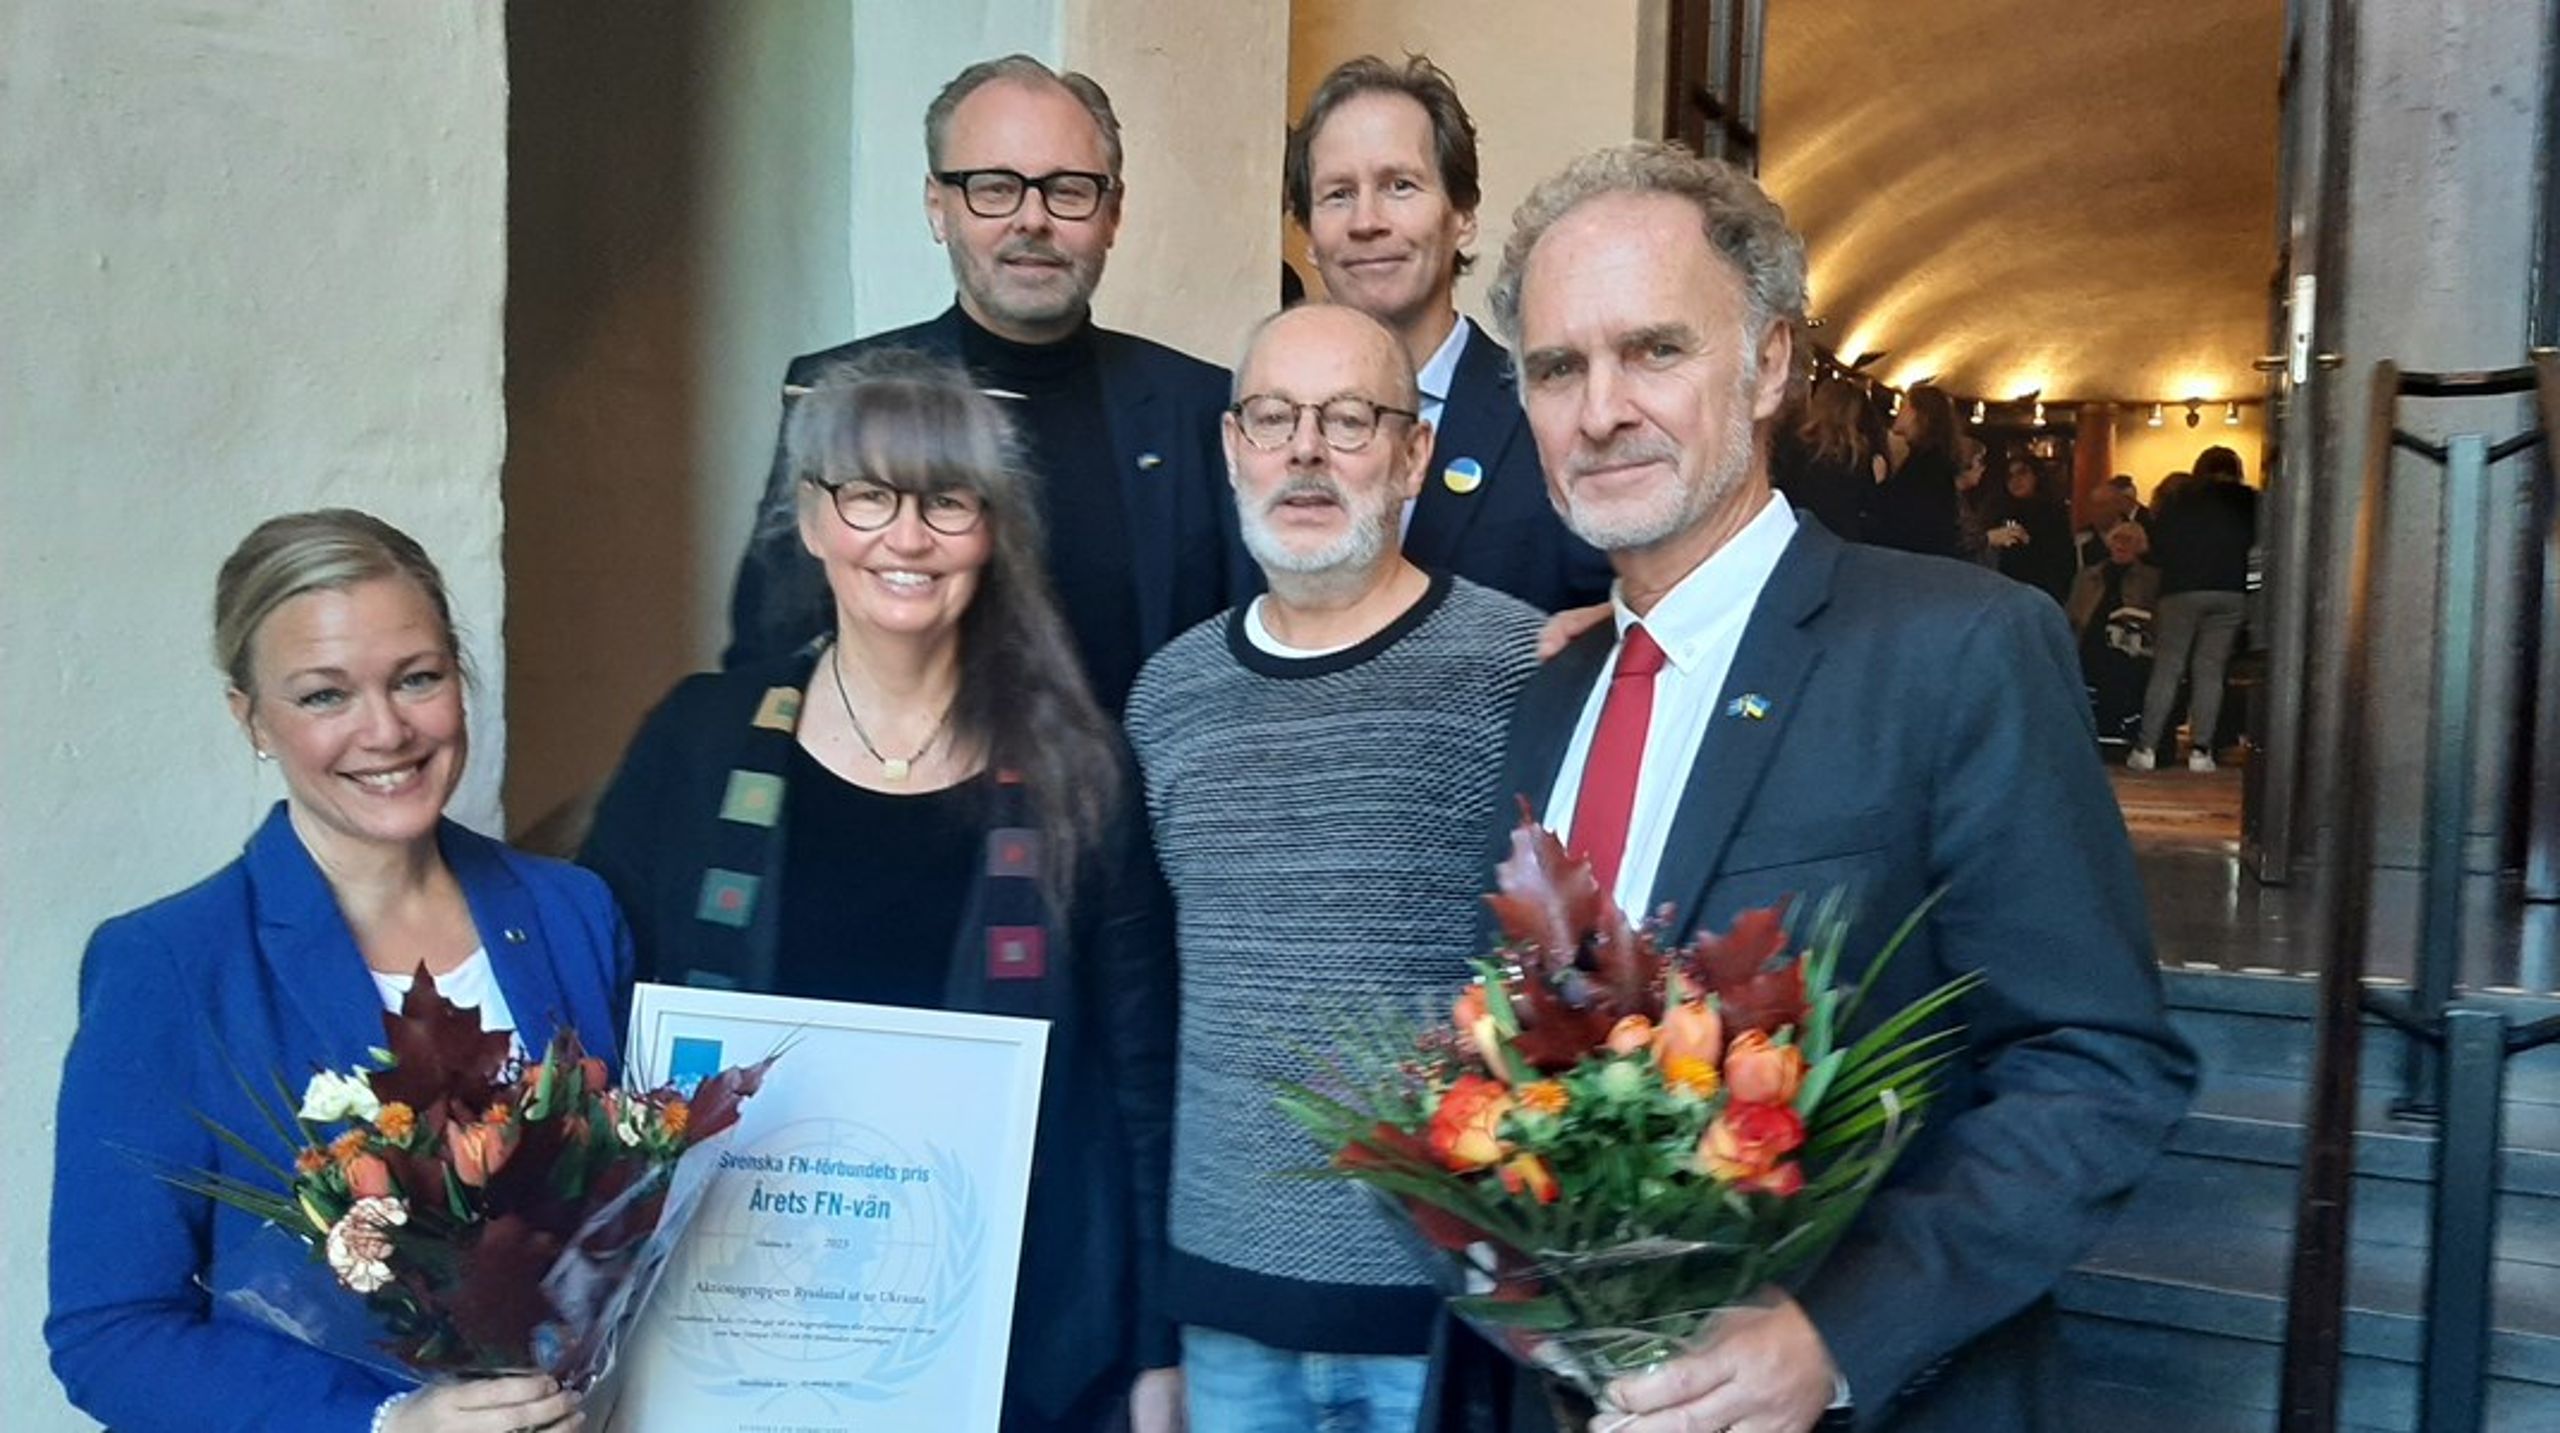 Svenska
FN-förbundets ordförande Annelie Börjesson (tv) överlämnar utmärkelsen Årets
FN-vän till aktionsgruppen Ryssland ut ur Ukraina.